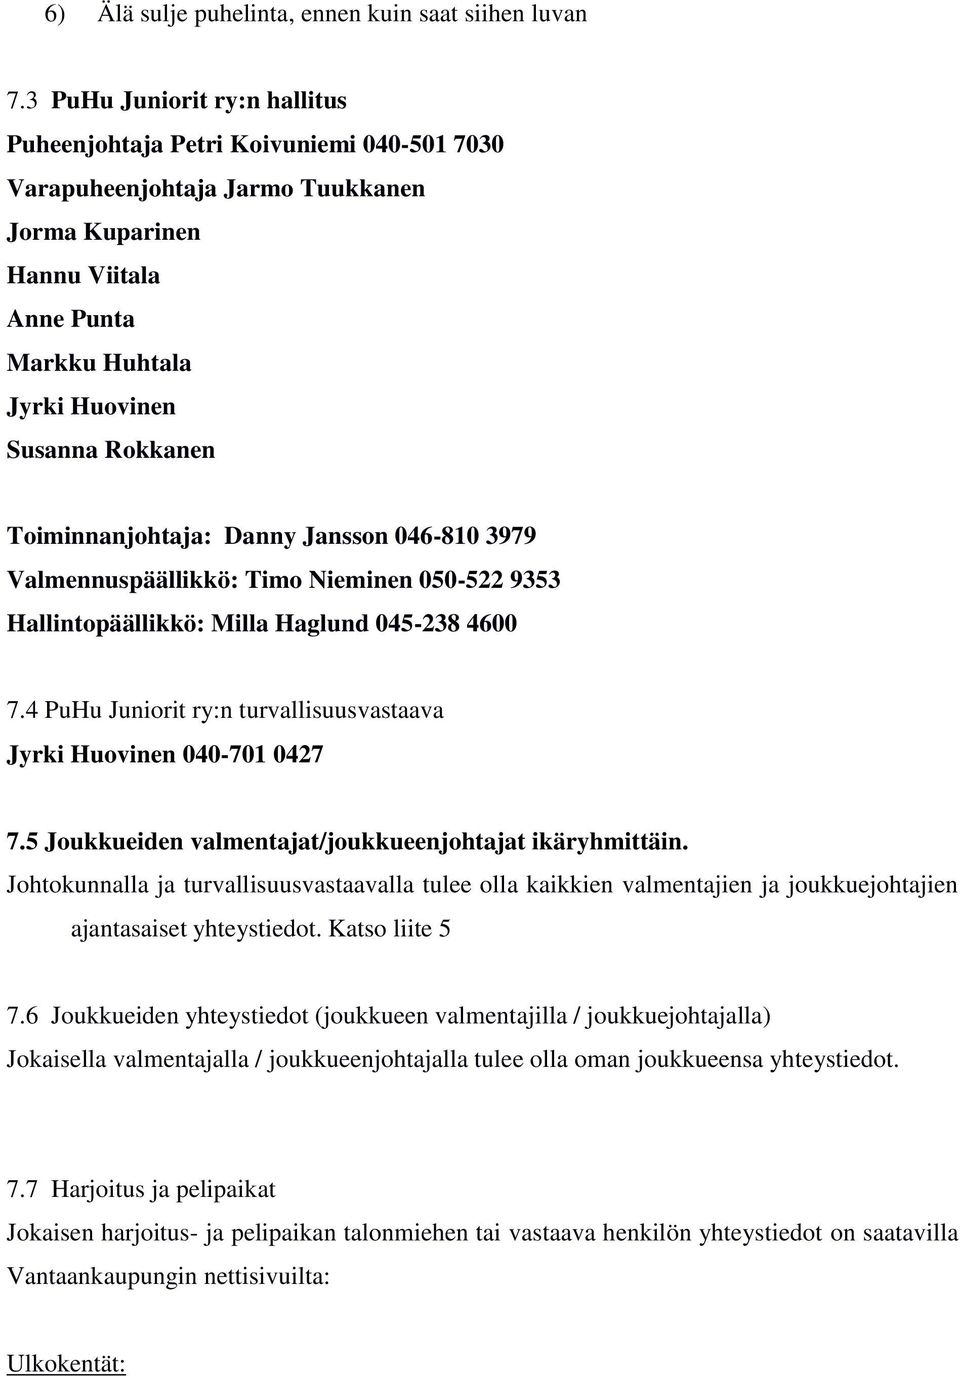 Toiminnanjohtaja: Danny Jansson 046-810 3979 Valmennuspäällikkö: Timo Nieminen 050-522 9353 Hallintopäällikkö: Milla Haglund 045-238 4600 7.